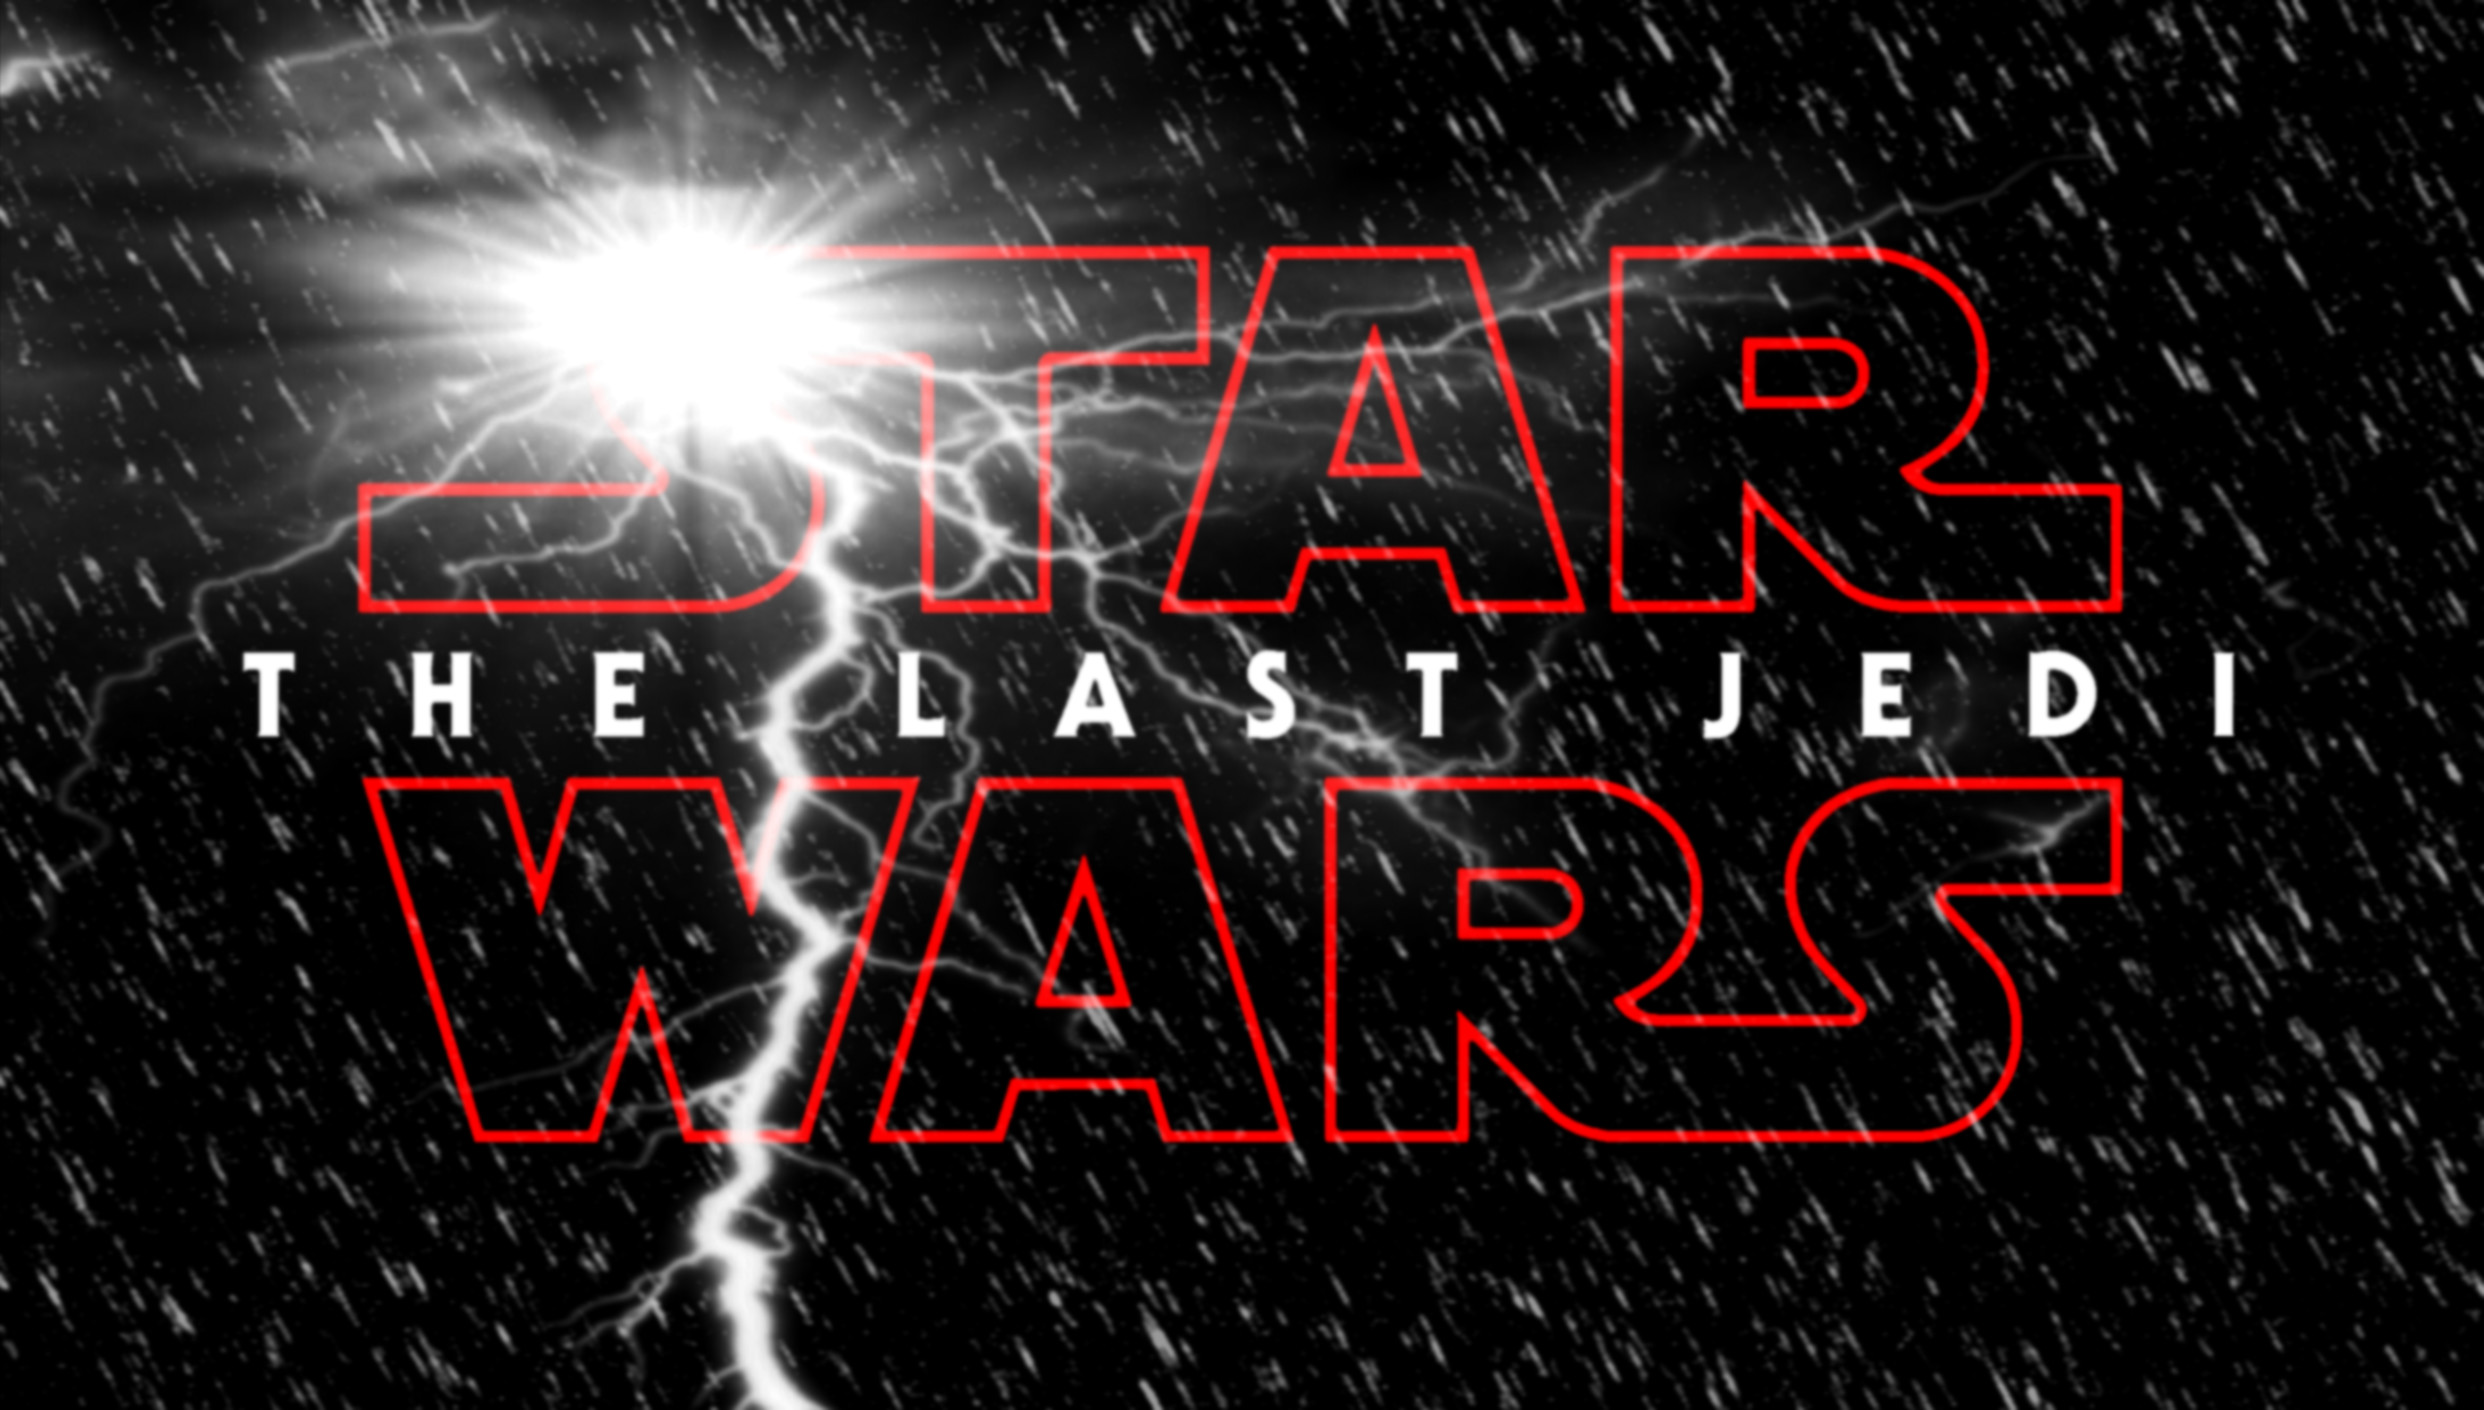 2484x1410 ... Star Wars Episode VIII: The Last Jedi (logo art) by Jones6192